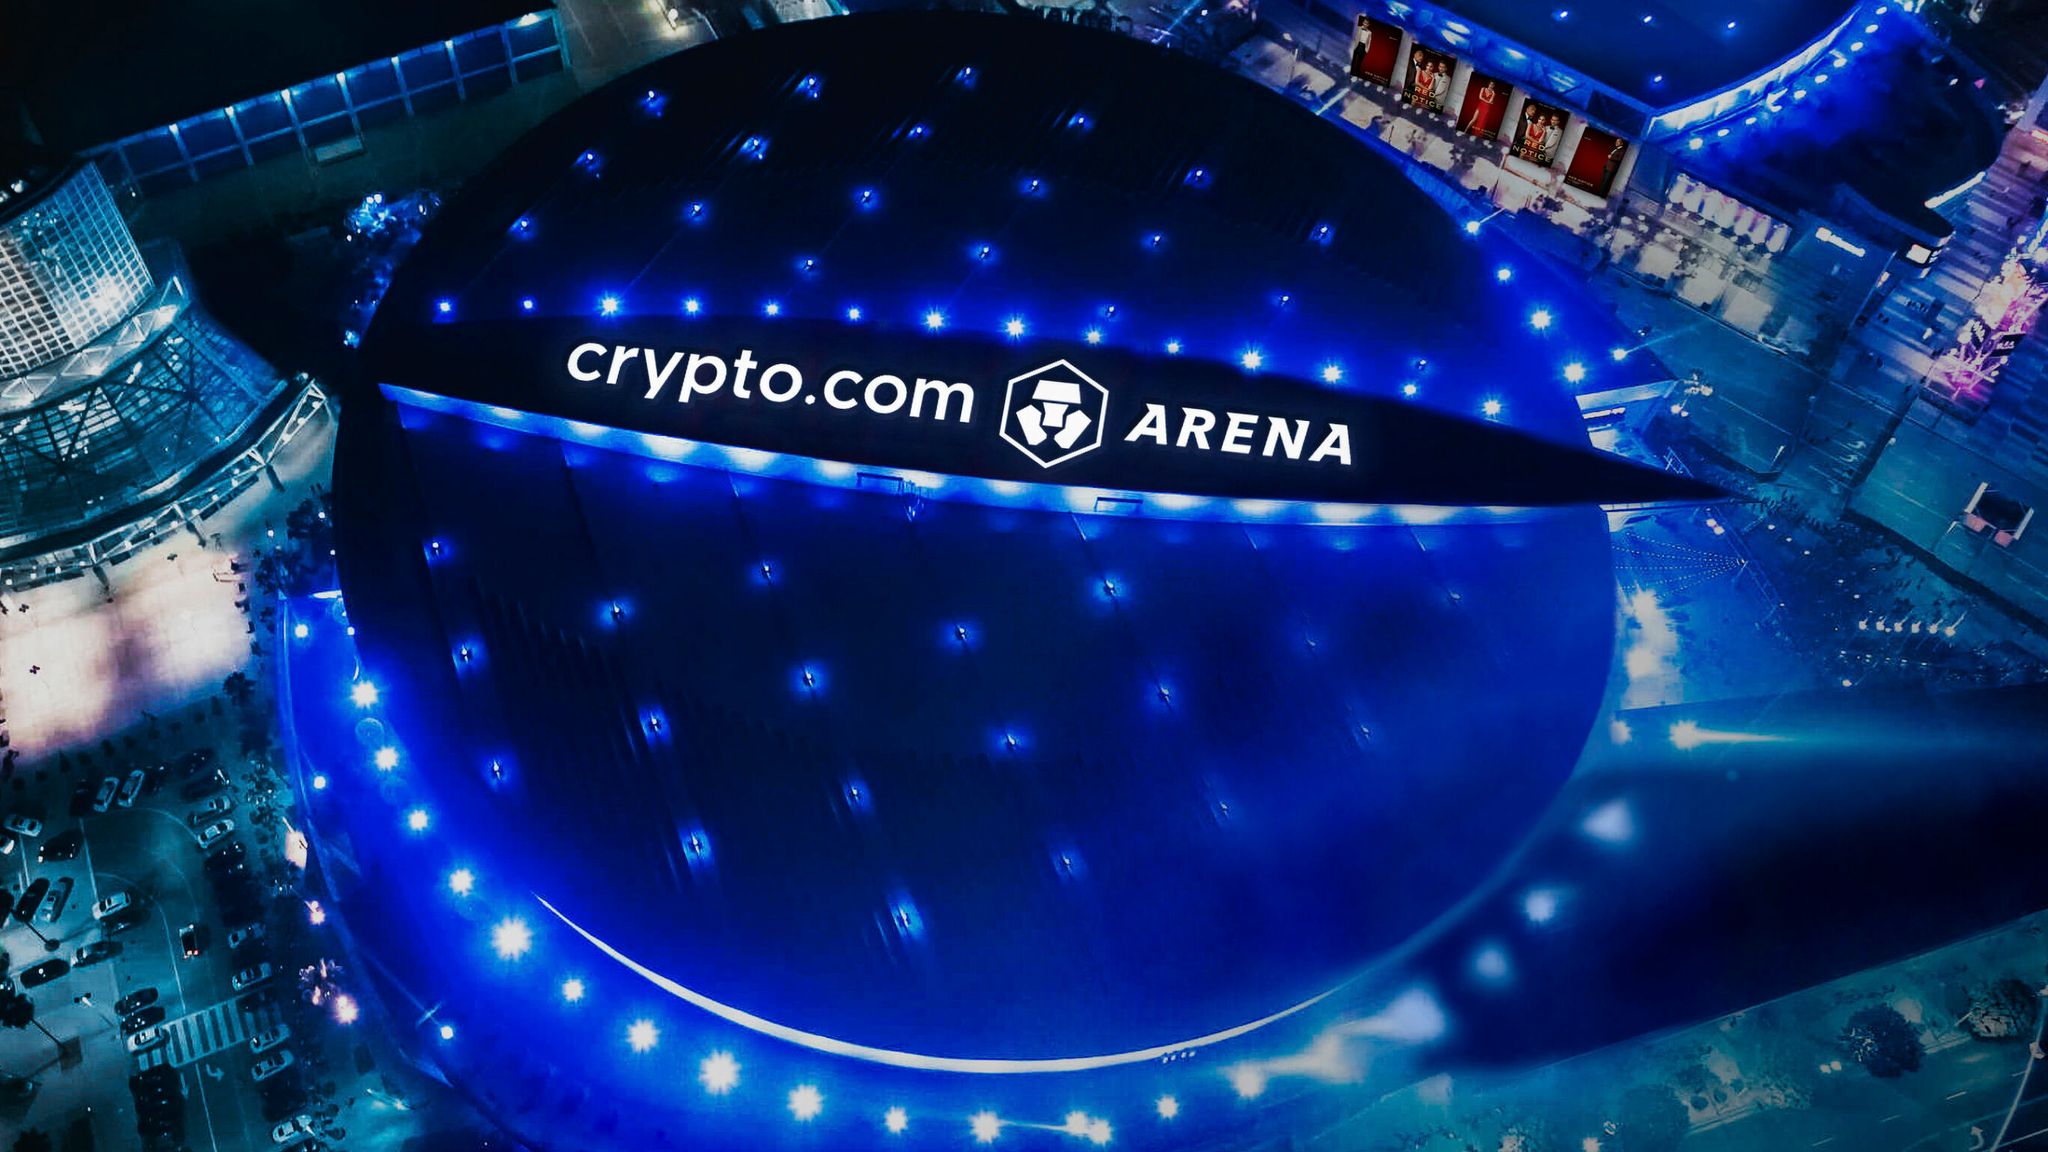 where is the crypto.com arena